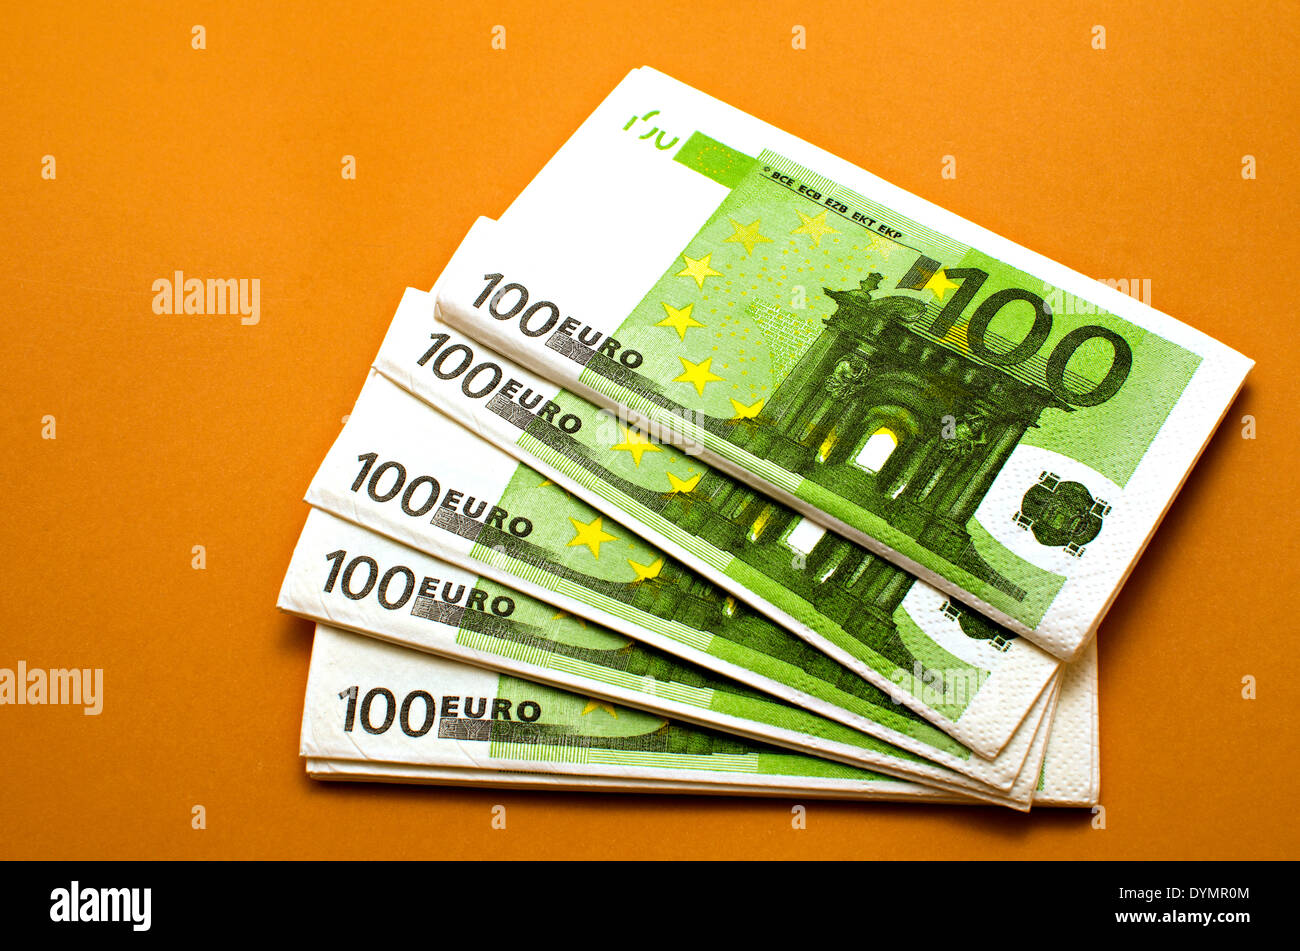 napkins 100 euros Stock Photo